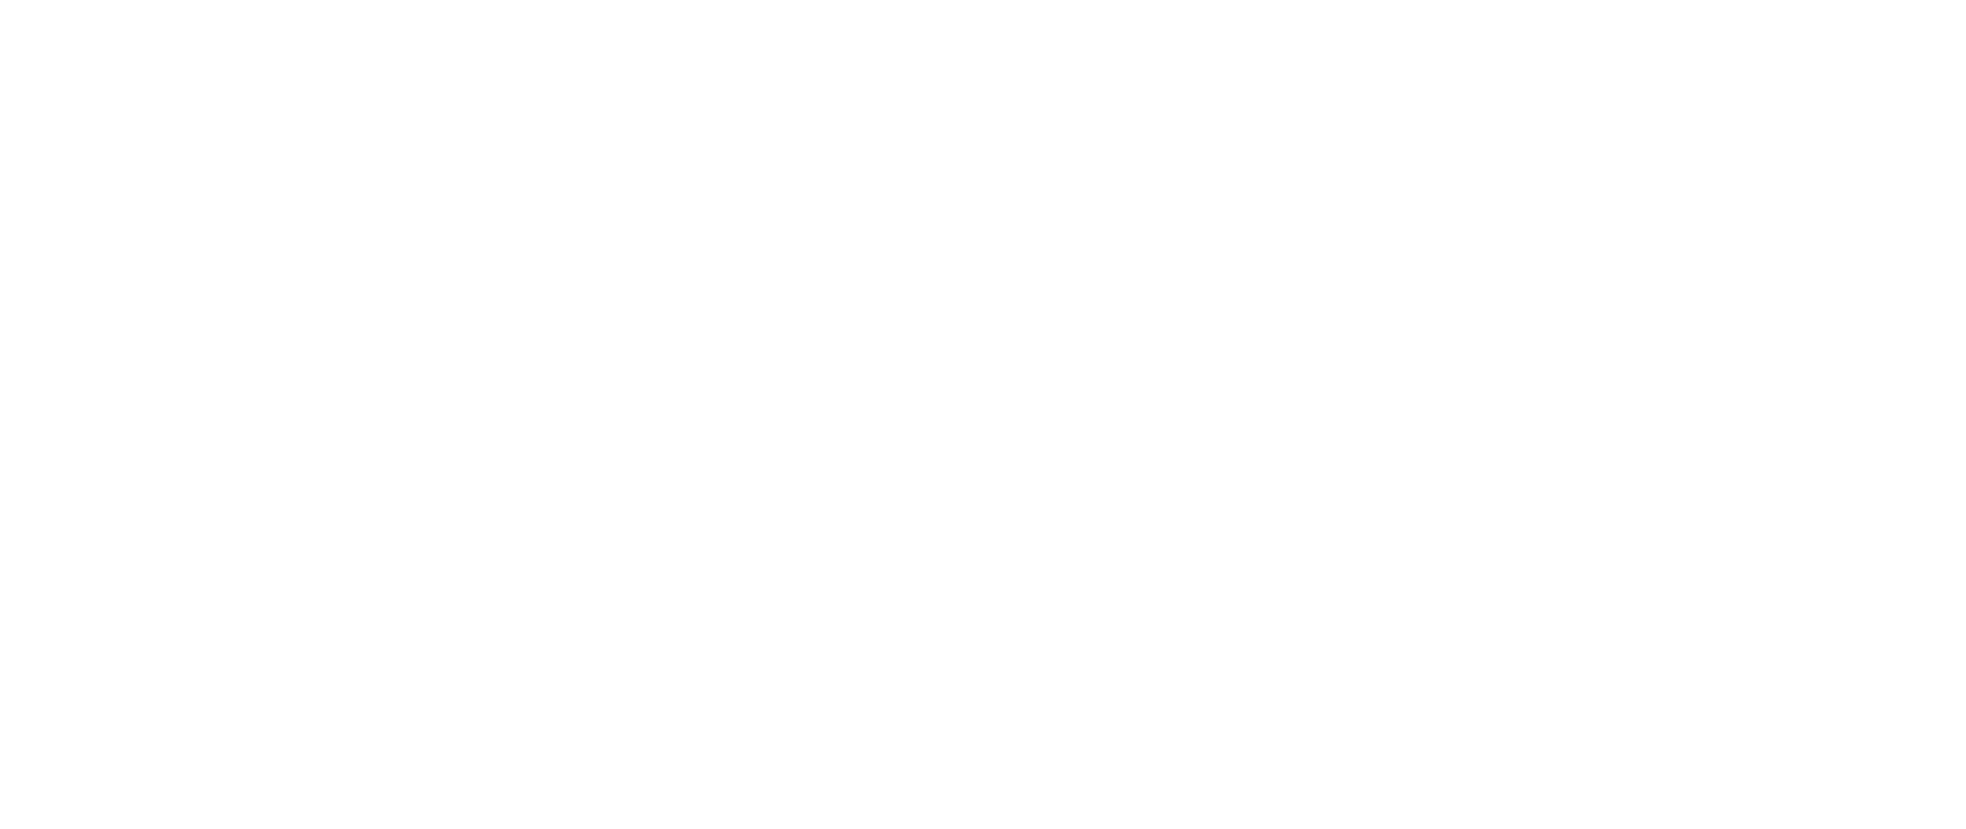 アクセス リワイルドミュージックフェスキャンプ Rewild Music Fes Camp 千葉 勝浦で音楽キャンプ グランピング